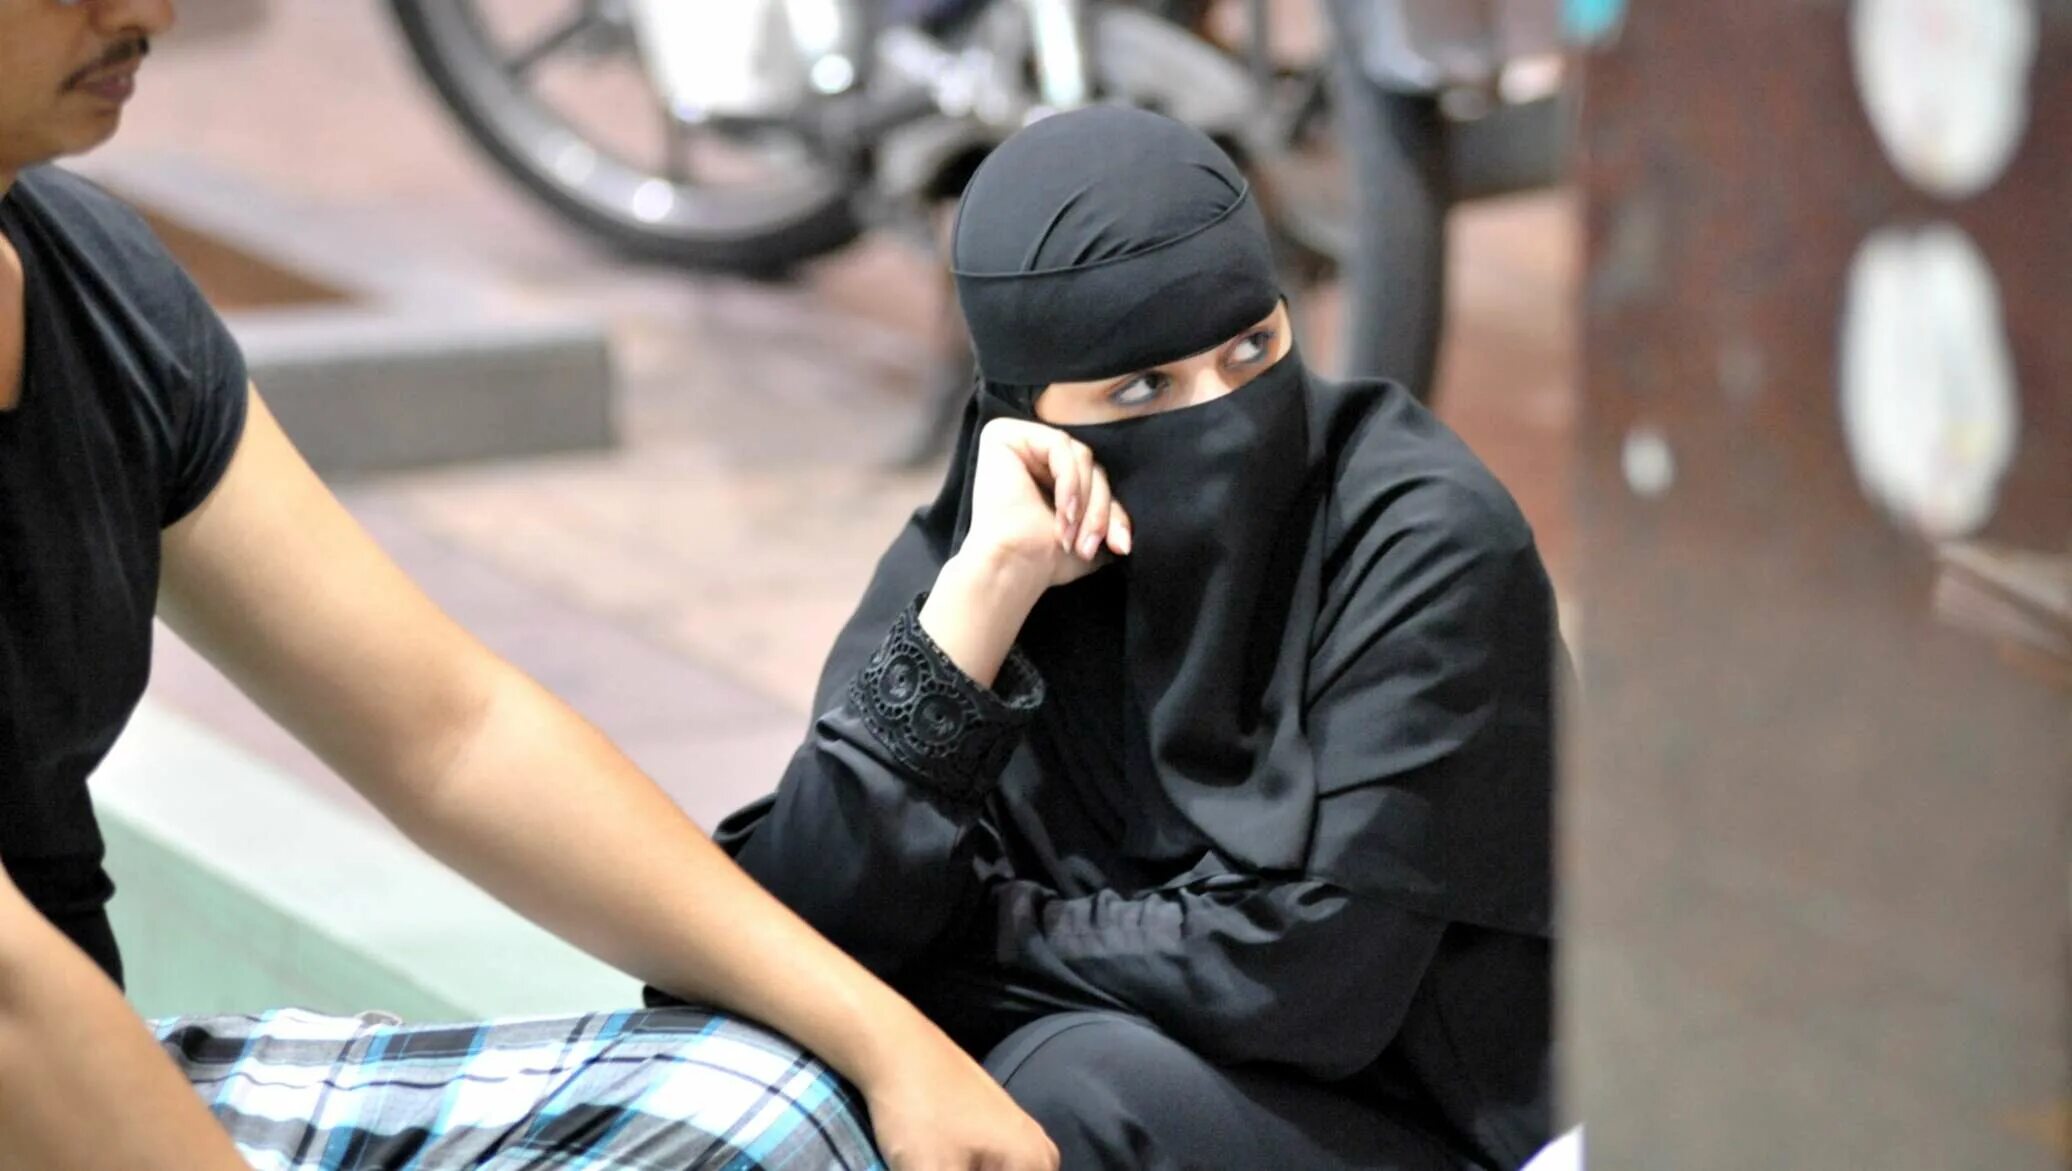 Запретить паранджу. Мусульманки в общественном месте. Одежда женщин полицейских мусульманок. Запрет хиджаба во Франции. Фото девушек в парандже в метро.